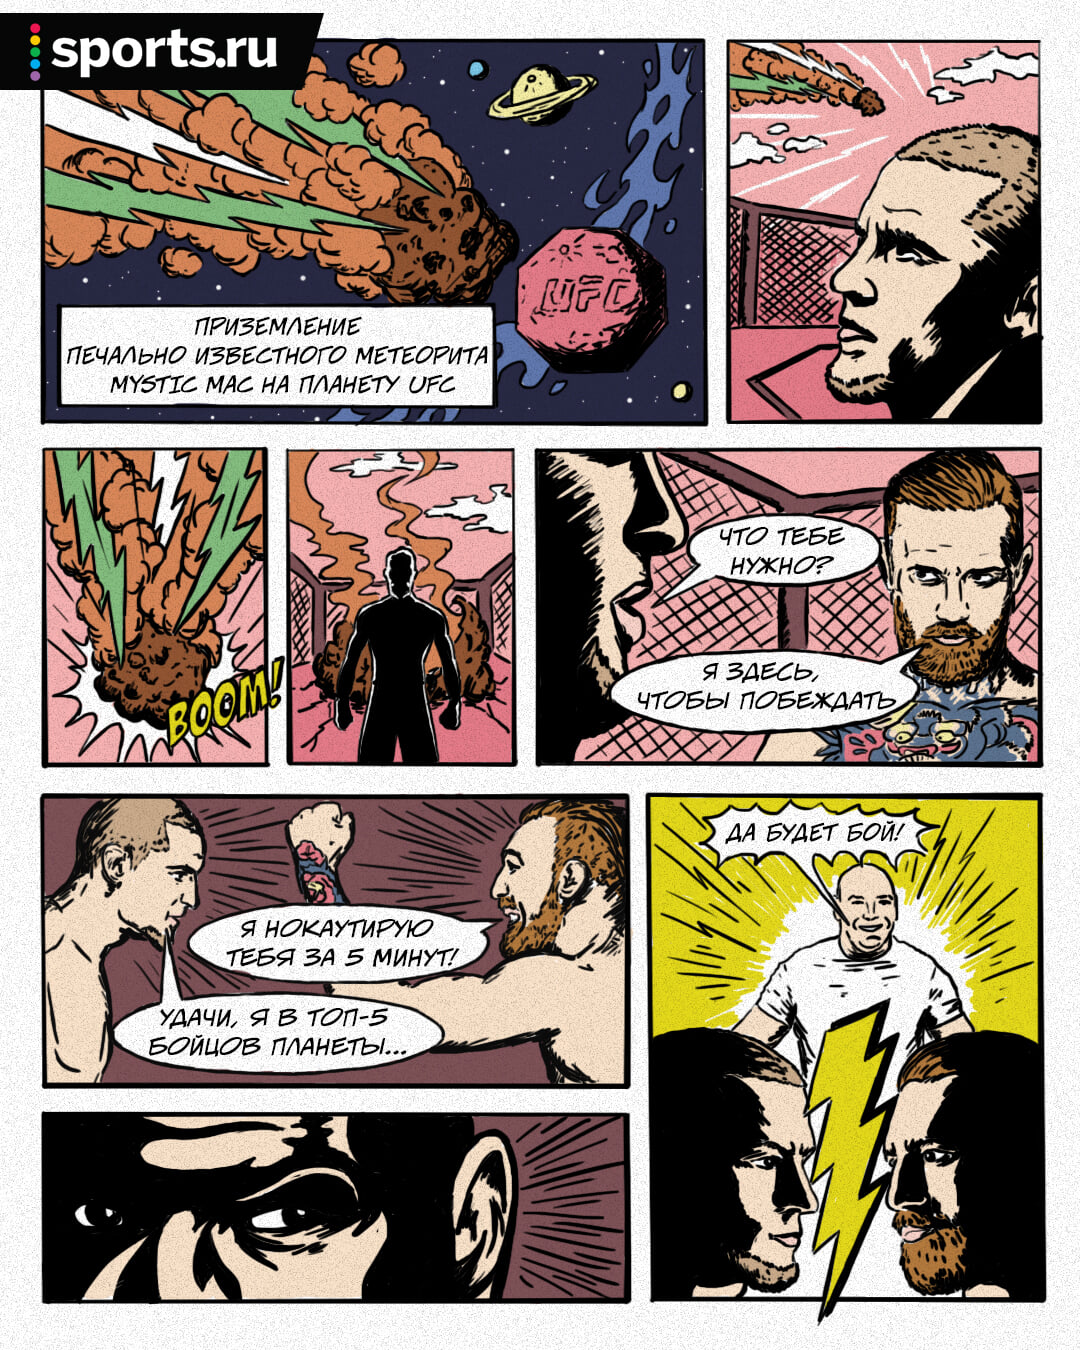 💥 Восьмиугольная планета UFC, ирландский метеорит, нокаут: мы нарисовали комикс про Конора и Порье!